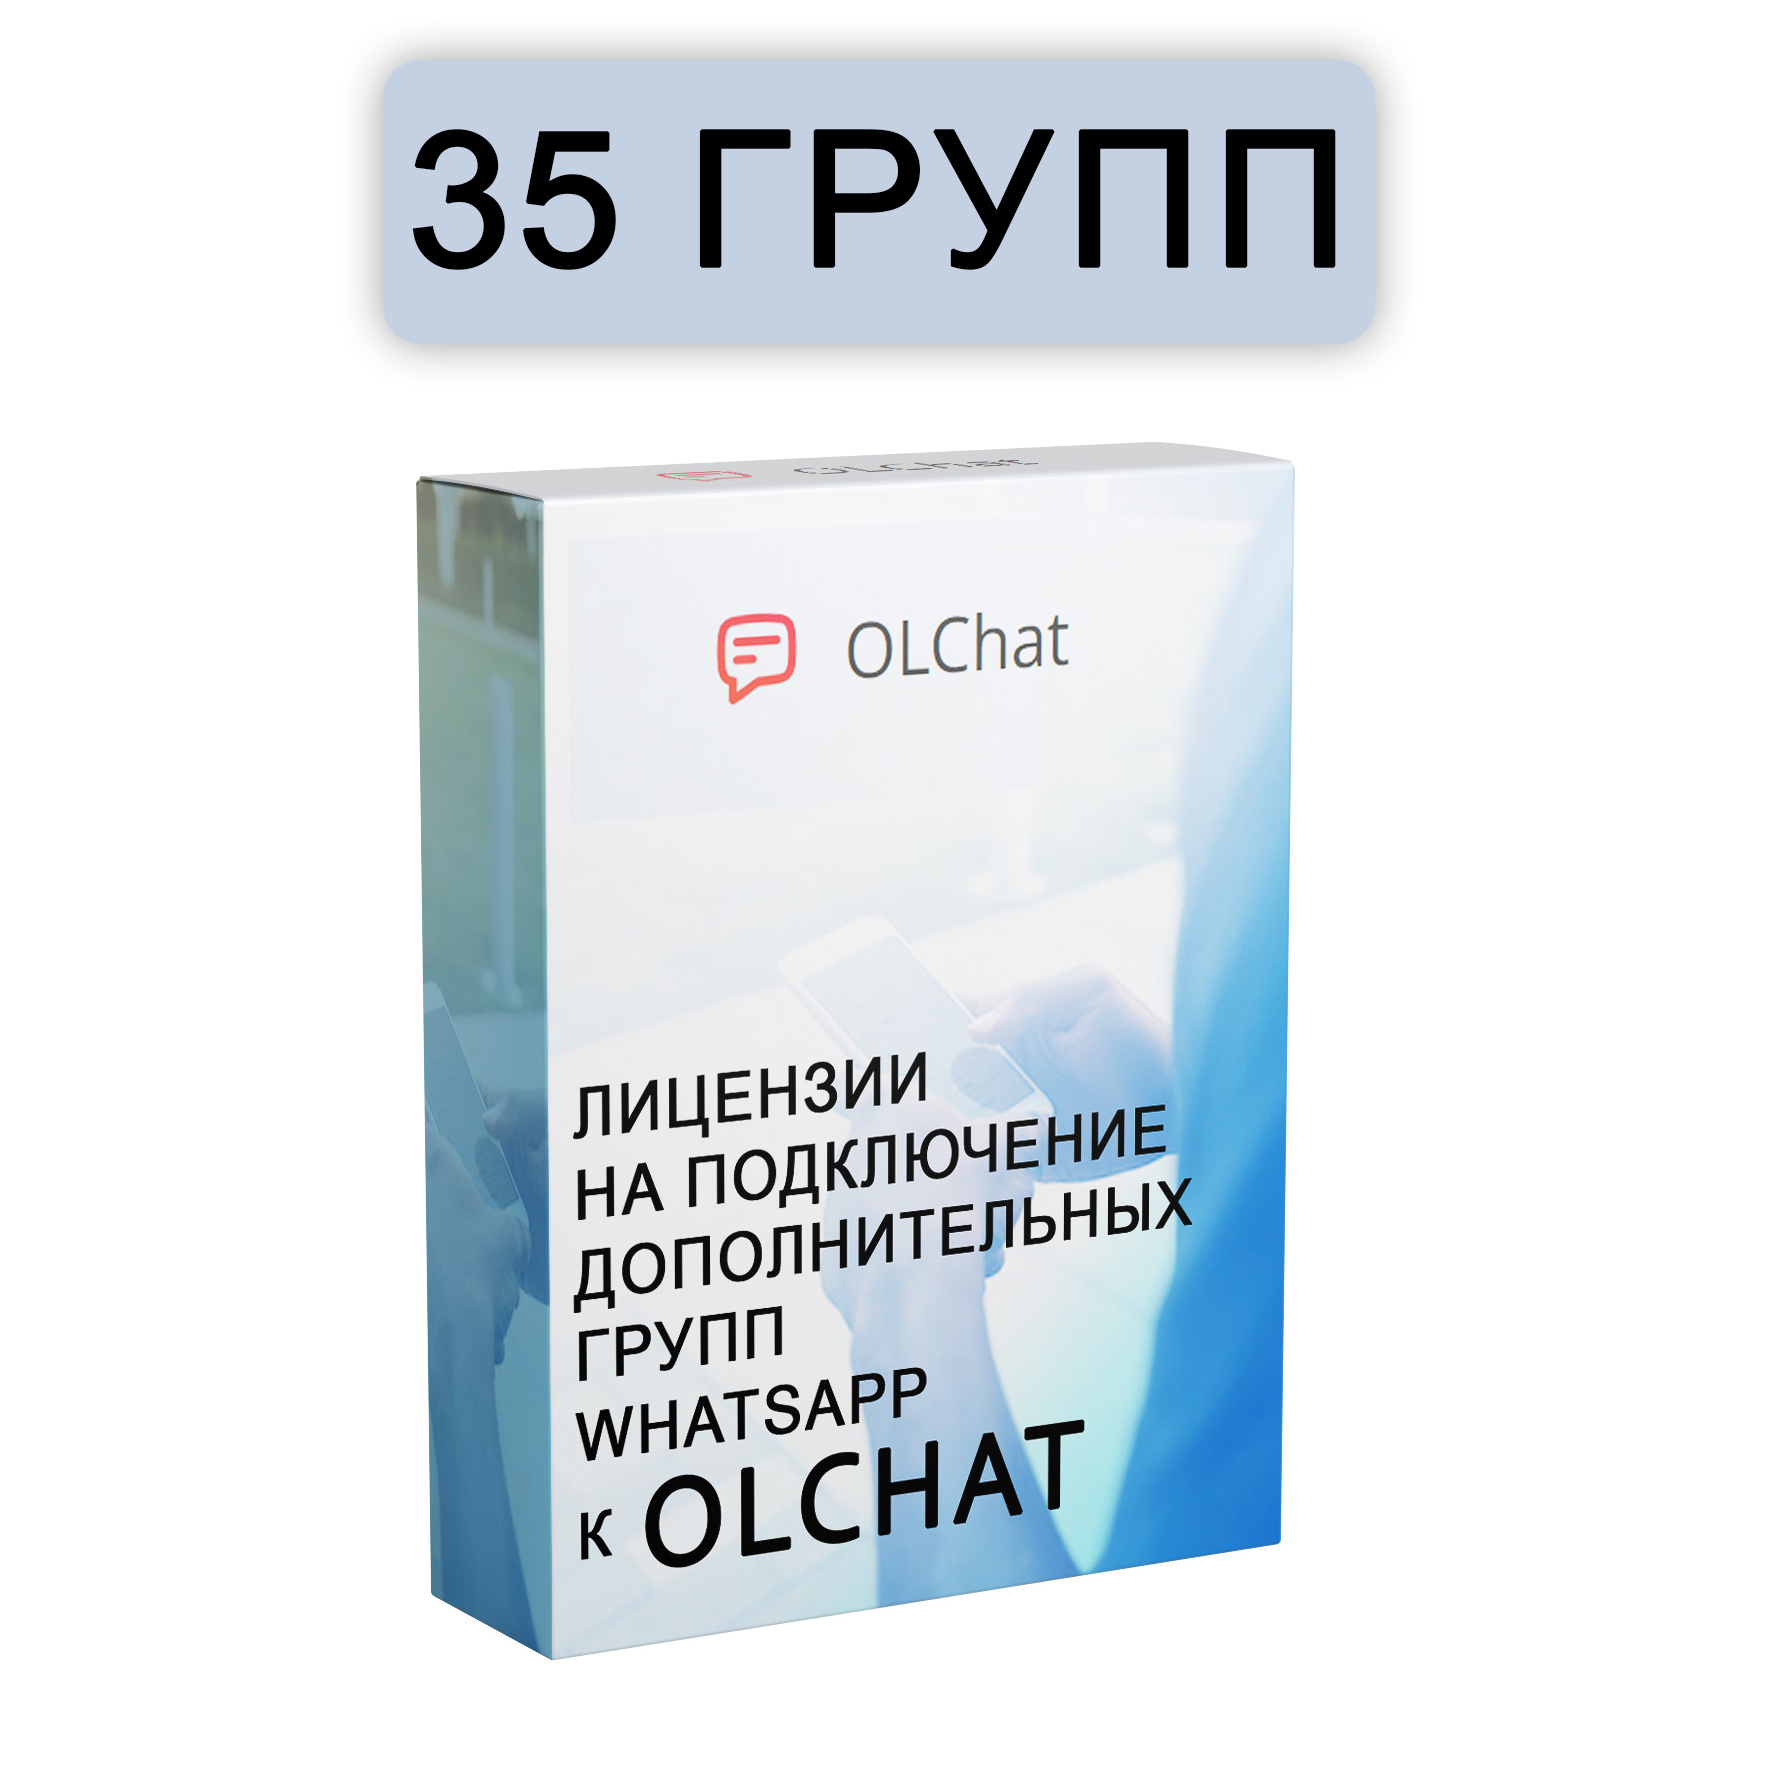 Подключение 35 групп WhatsApp к OLChat на 30 дней